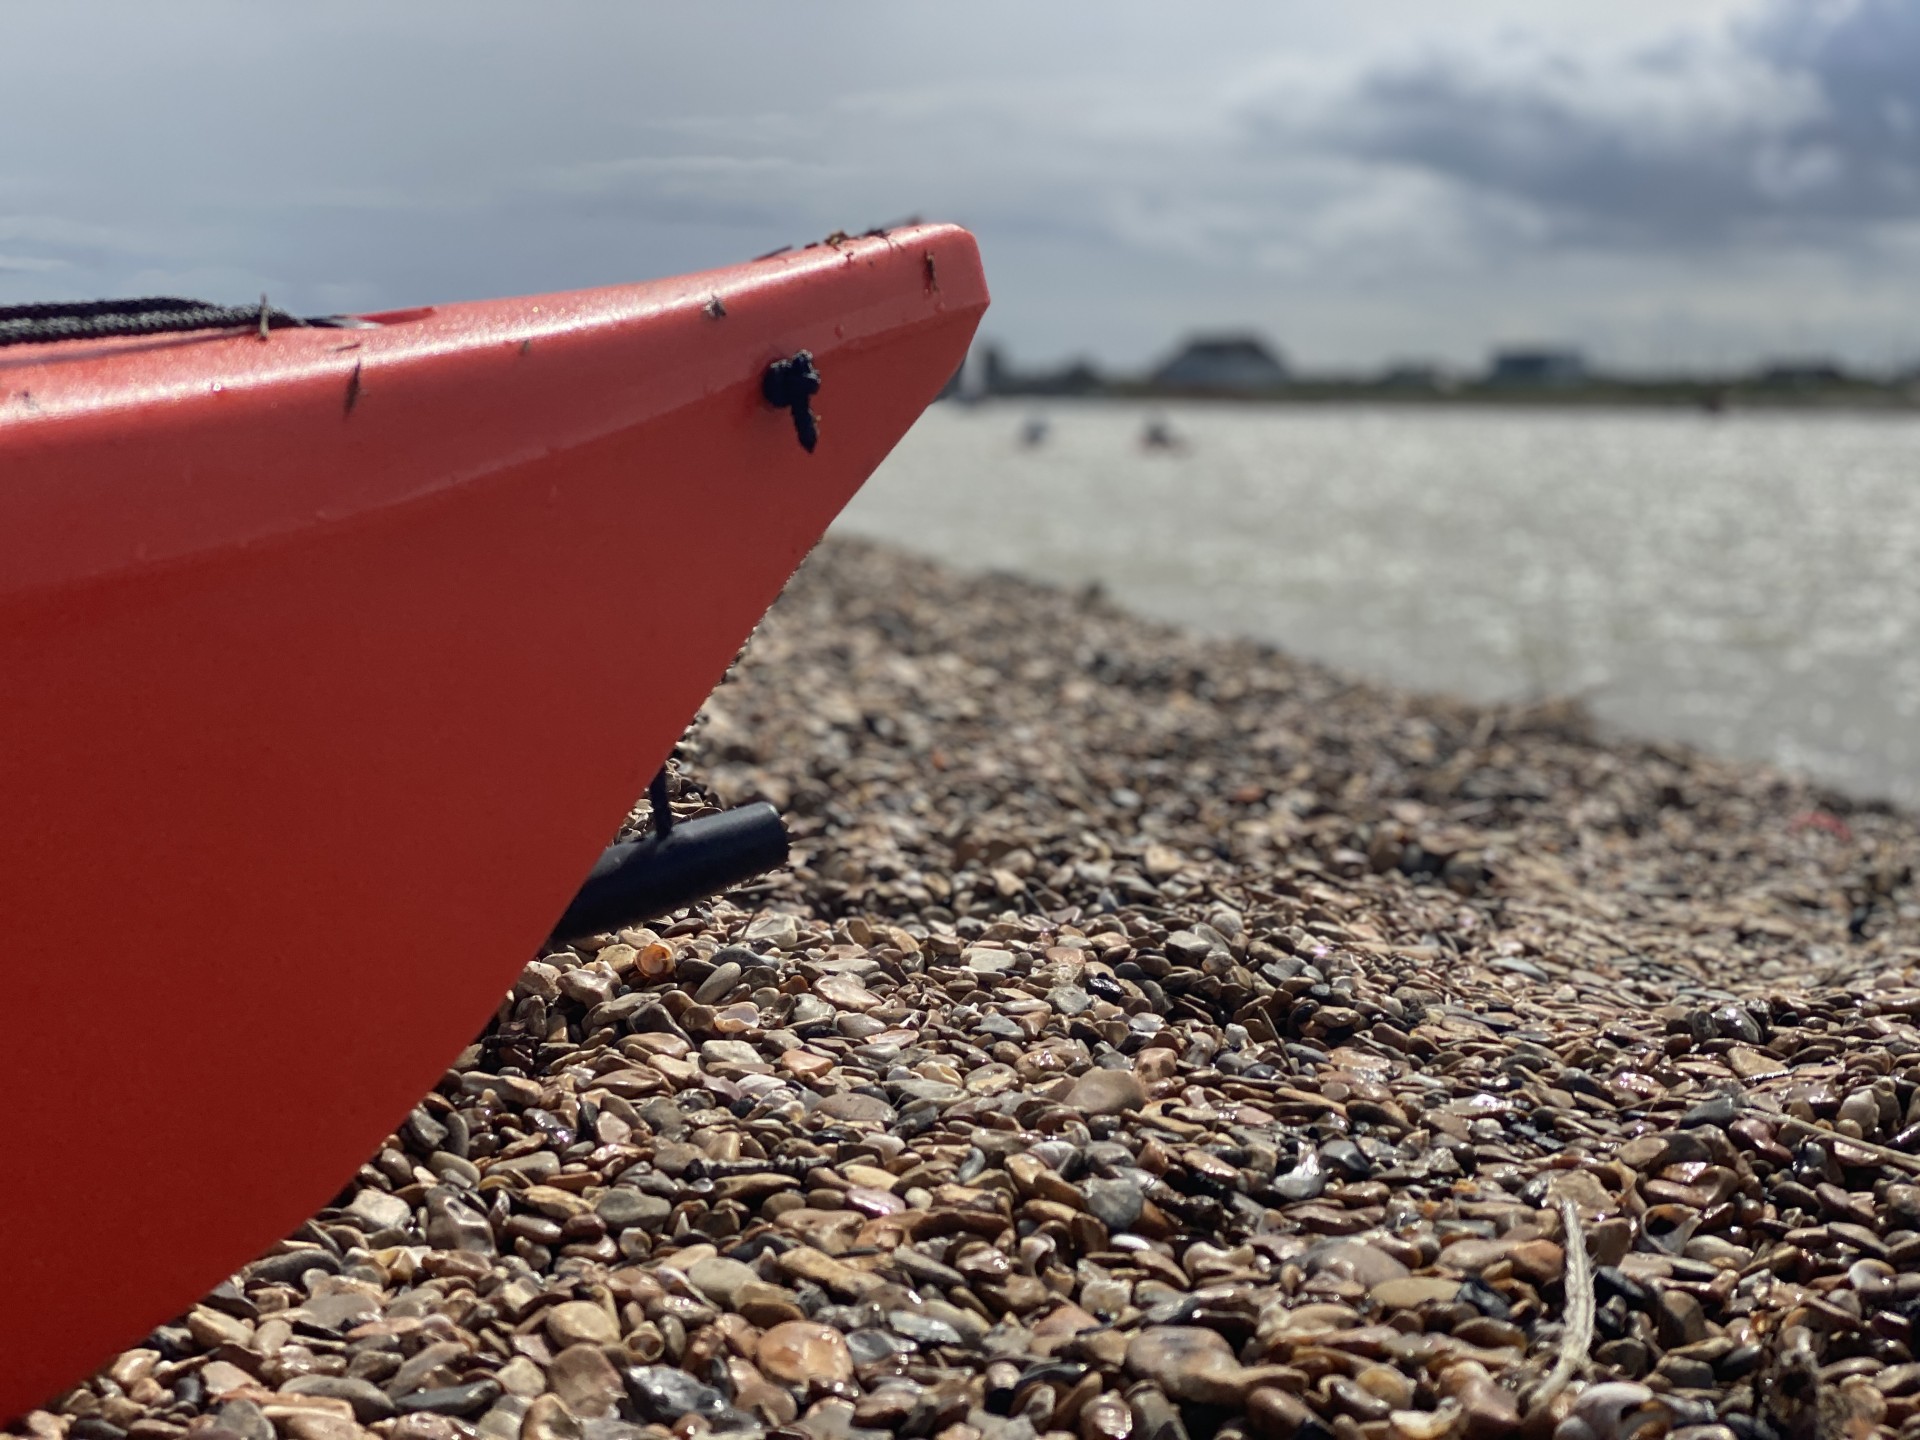 Sea kayaks on the beach near the Deben estuary.